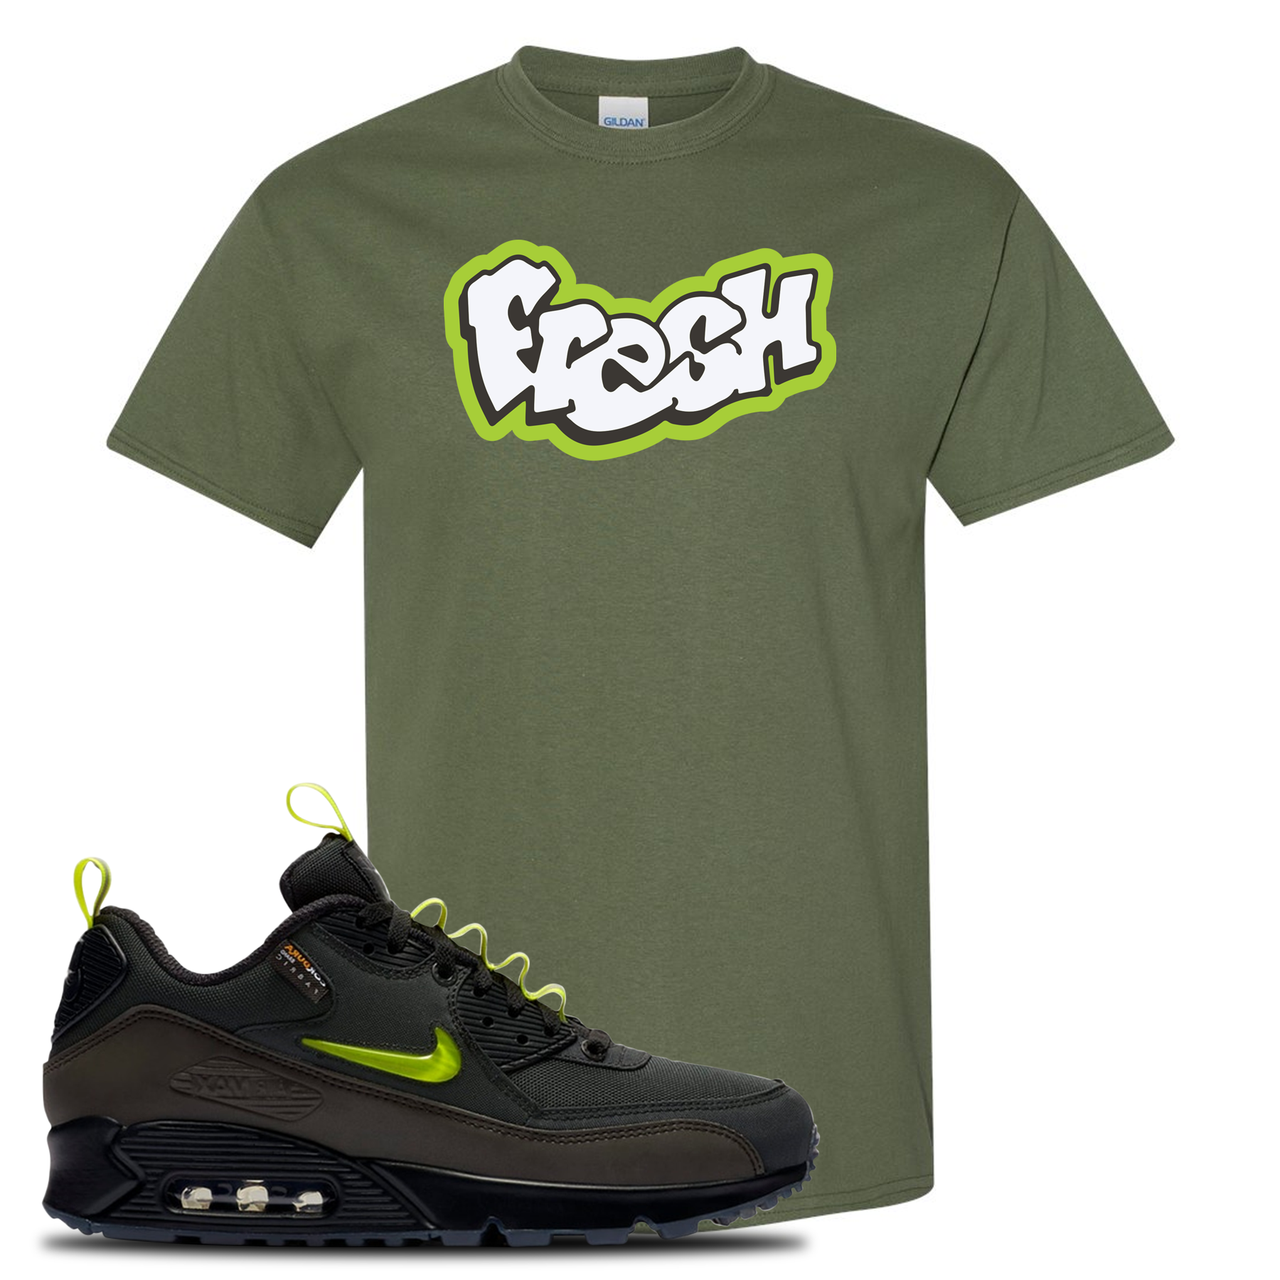 The Basement X Air Max 90 Manchester Fresh Military Green Sneaker Hook Up T-Shirt